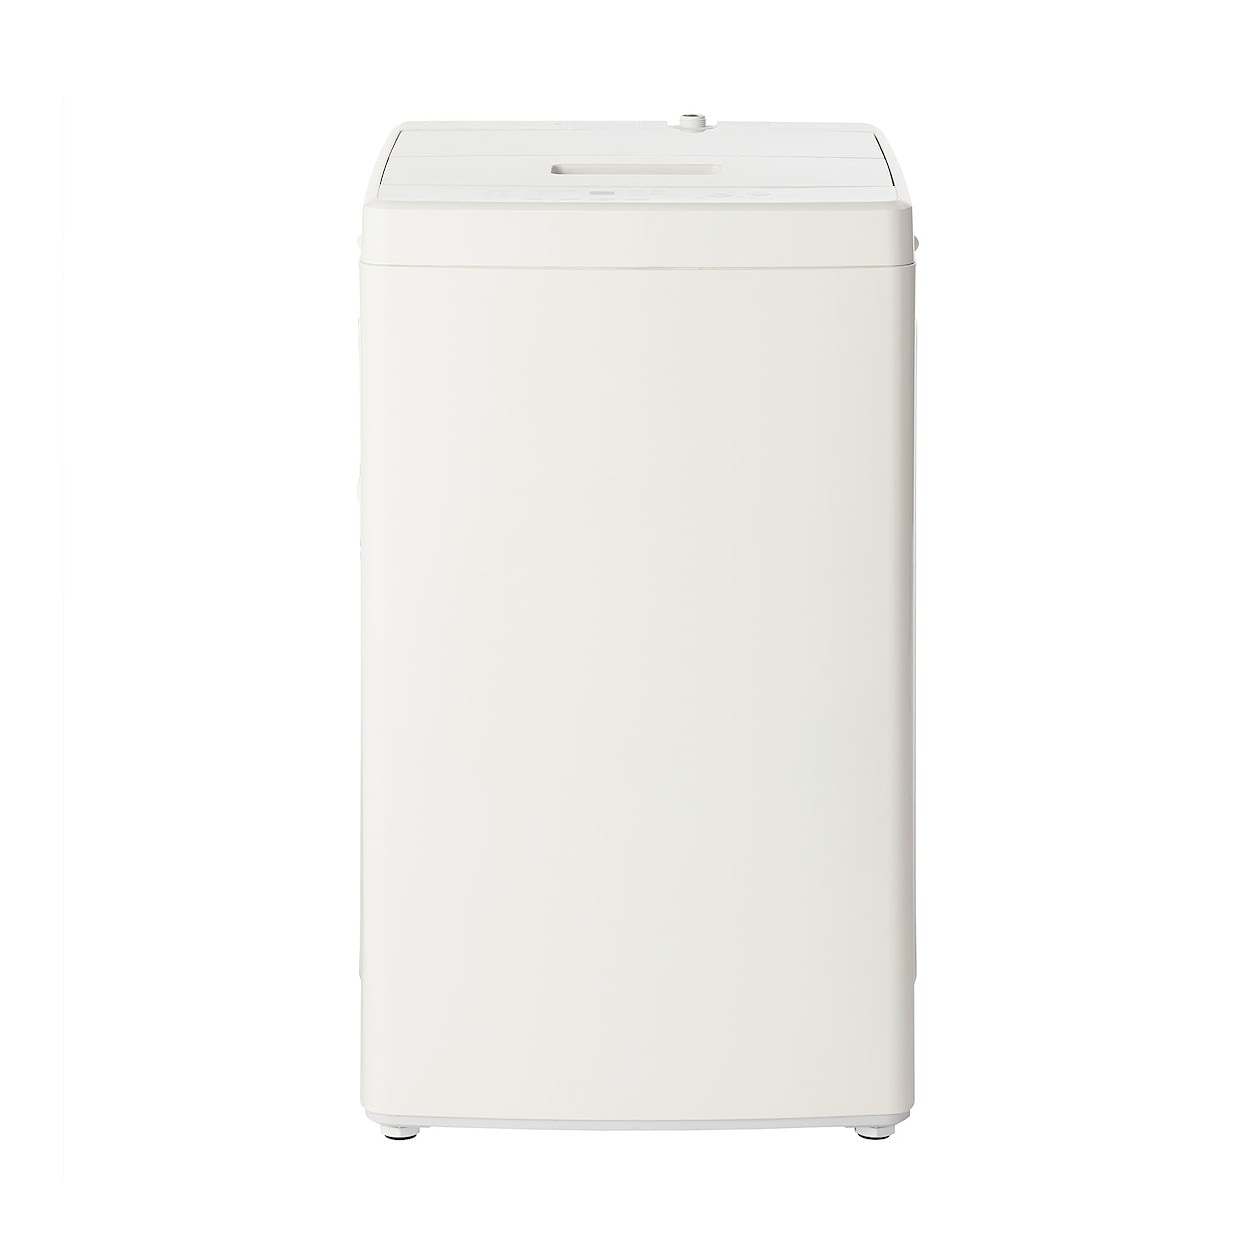 【無印良品】 全自動洗濯機 5MJ-W50A